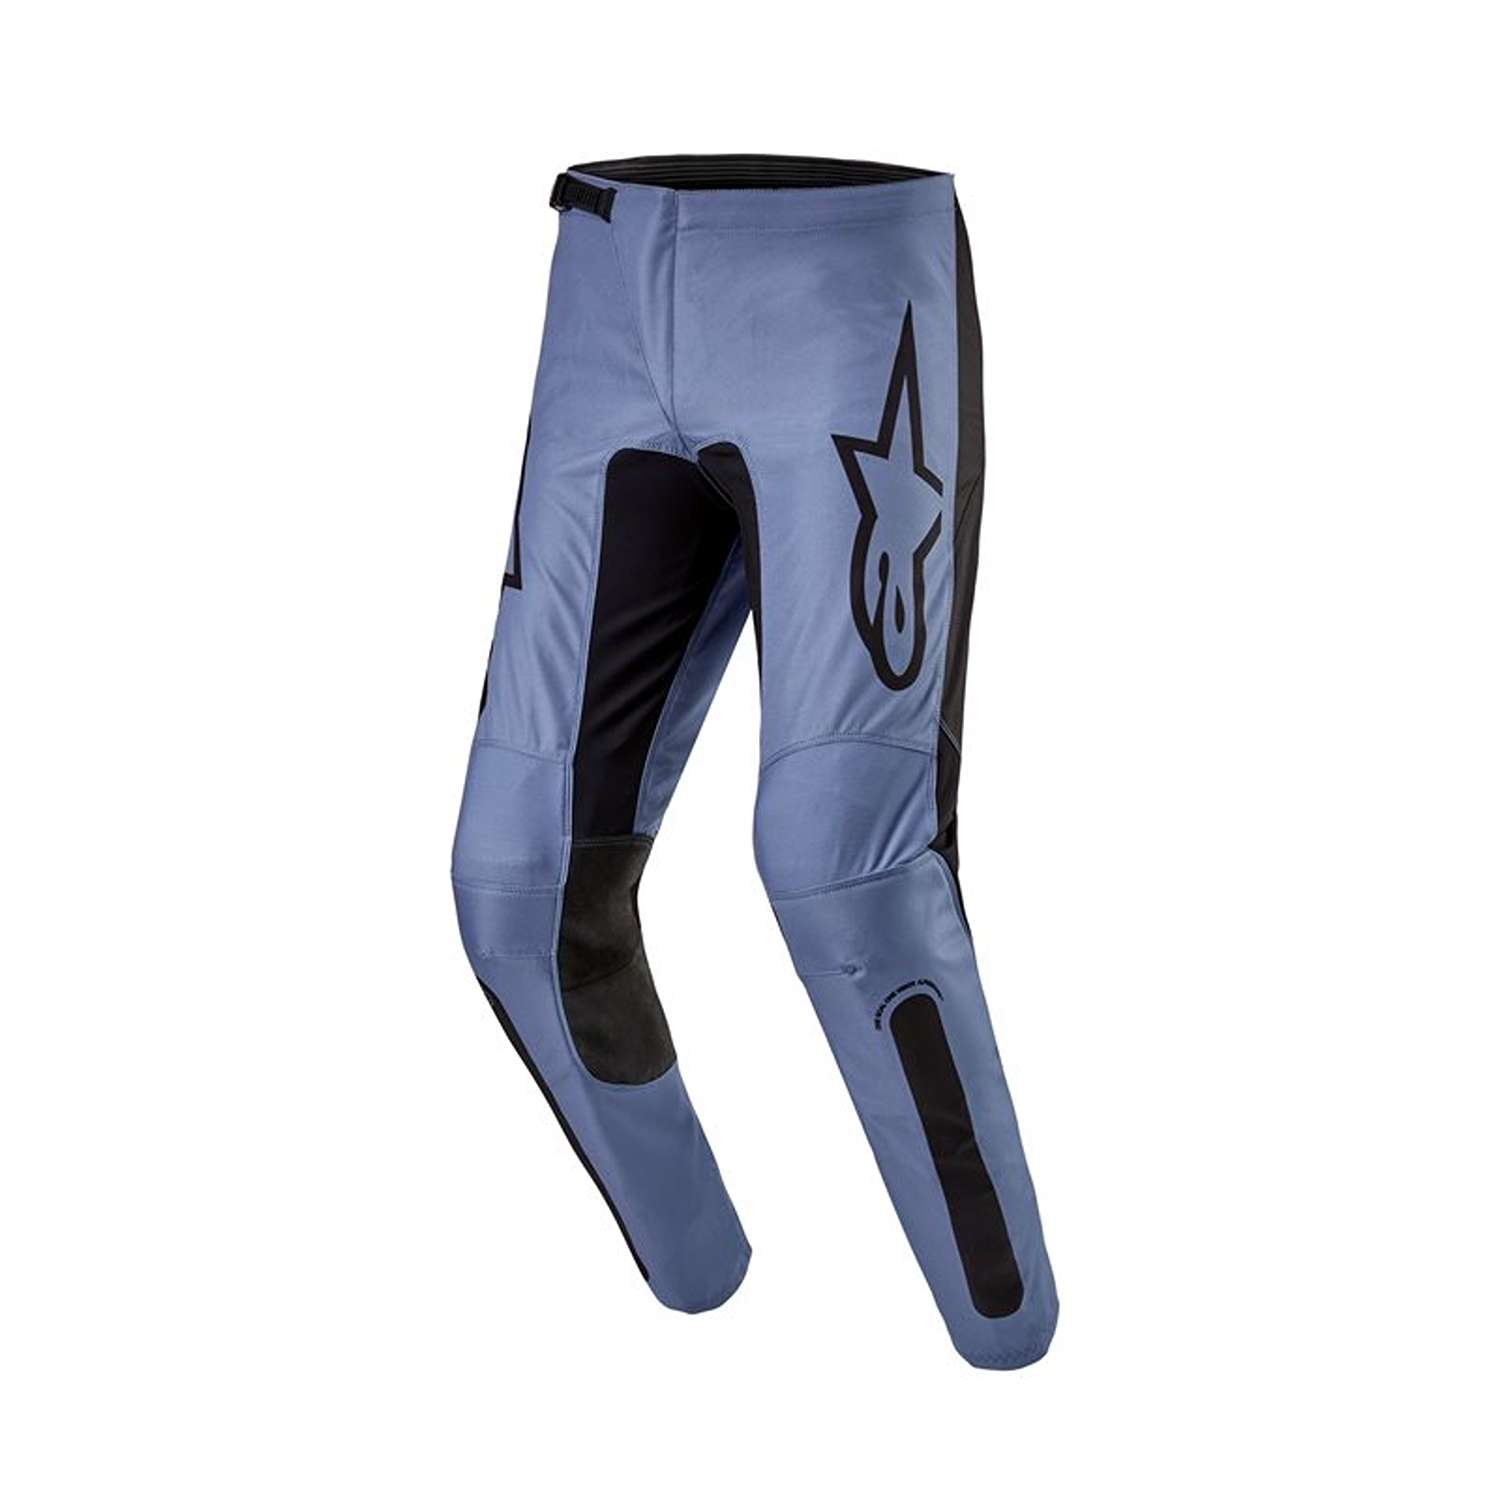 Image of Alpinestars Fluid Lurv Pants Light Blue Black Size 34 ID 8059347265230